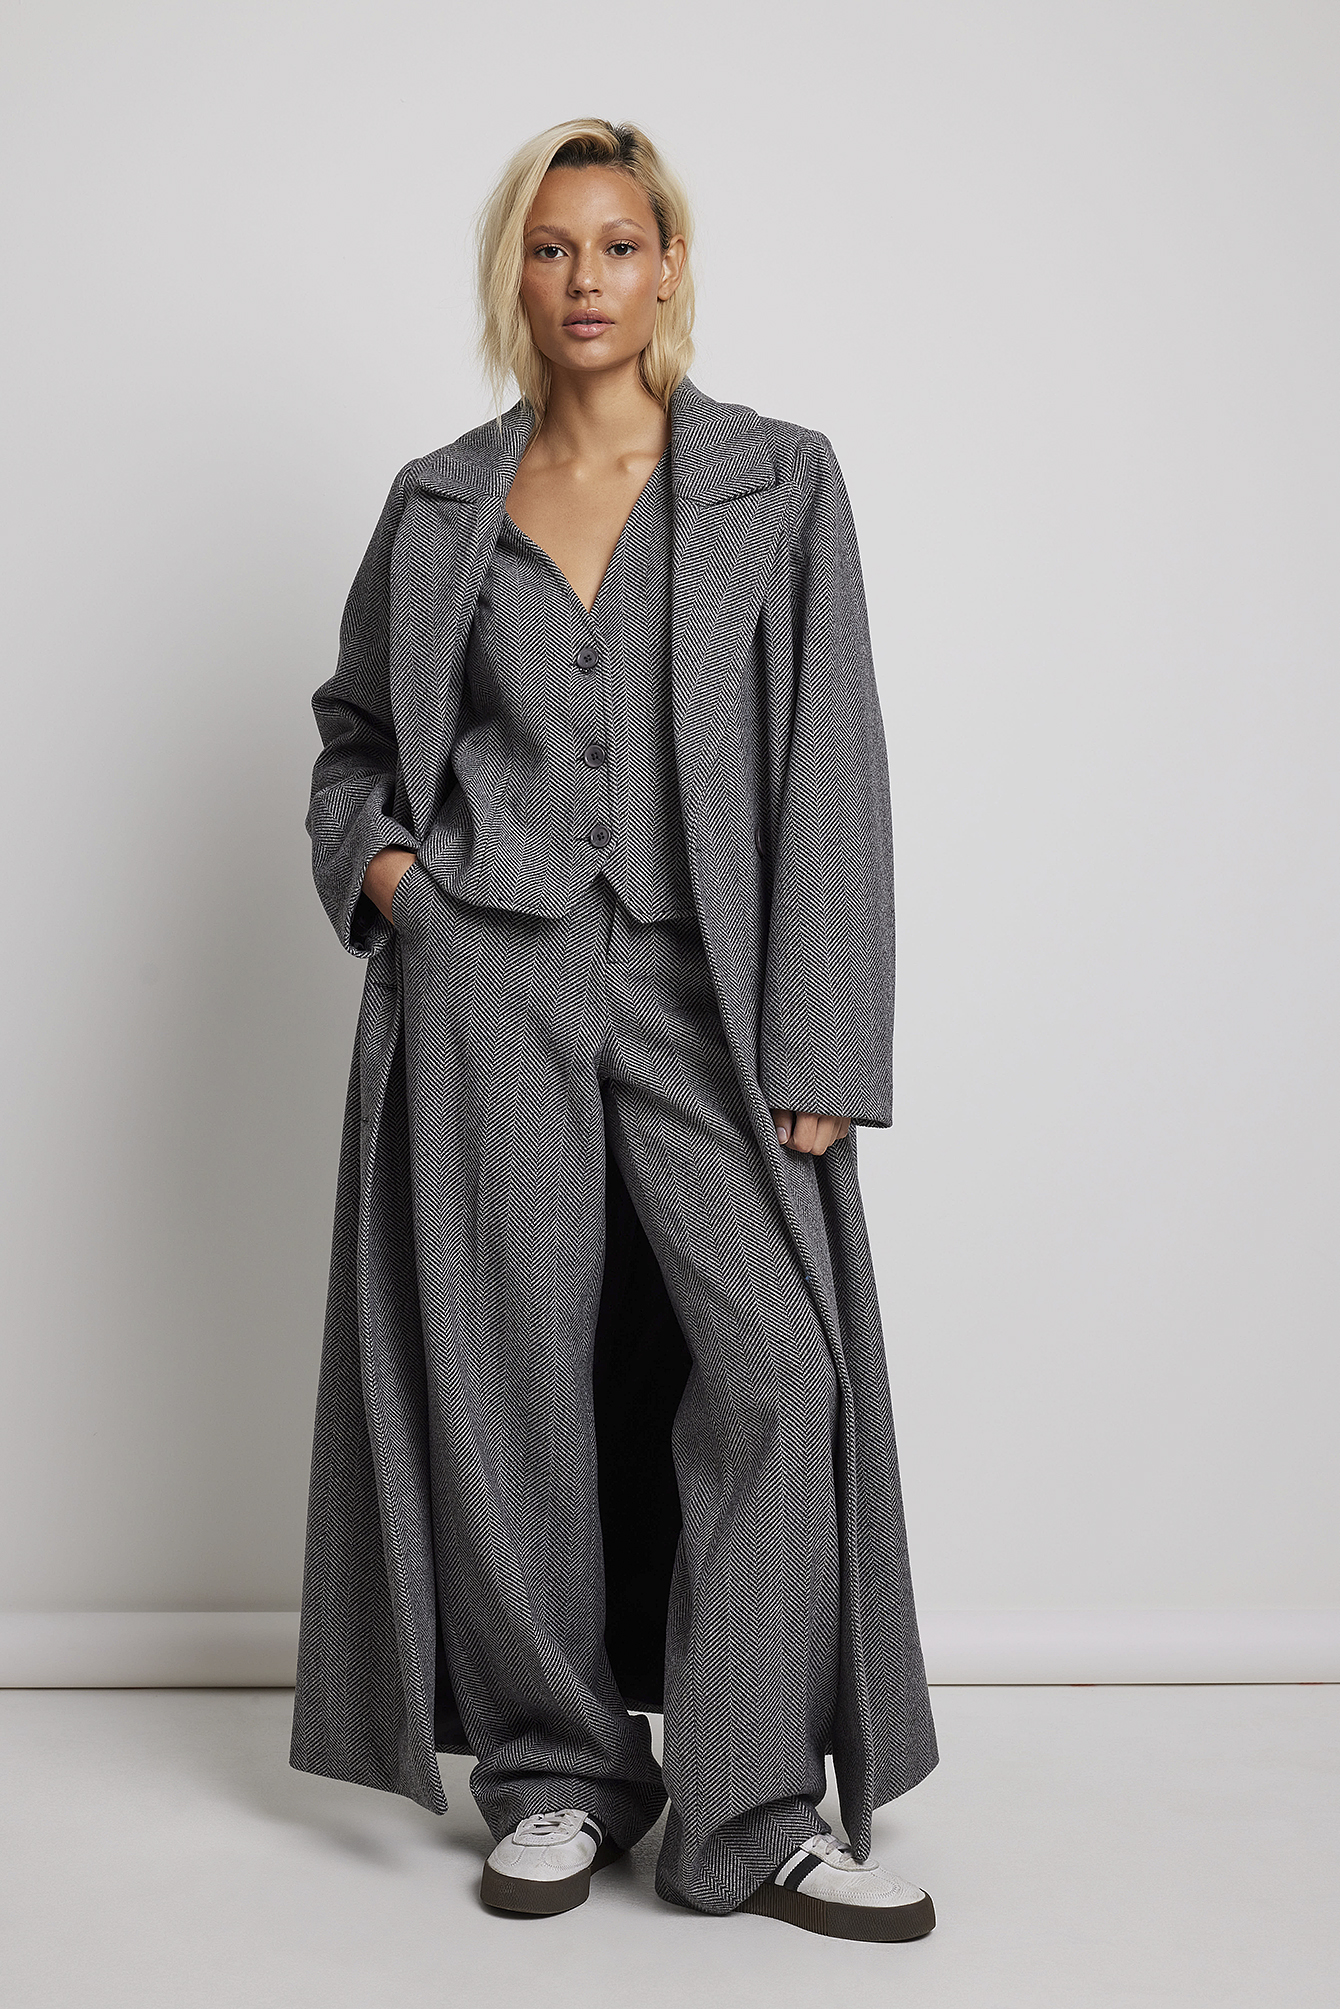 Grey Tweed Outfit.